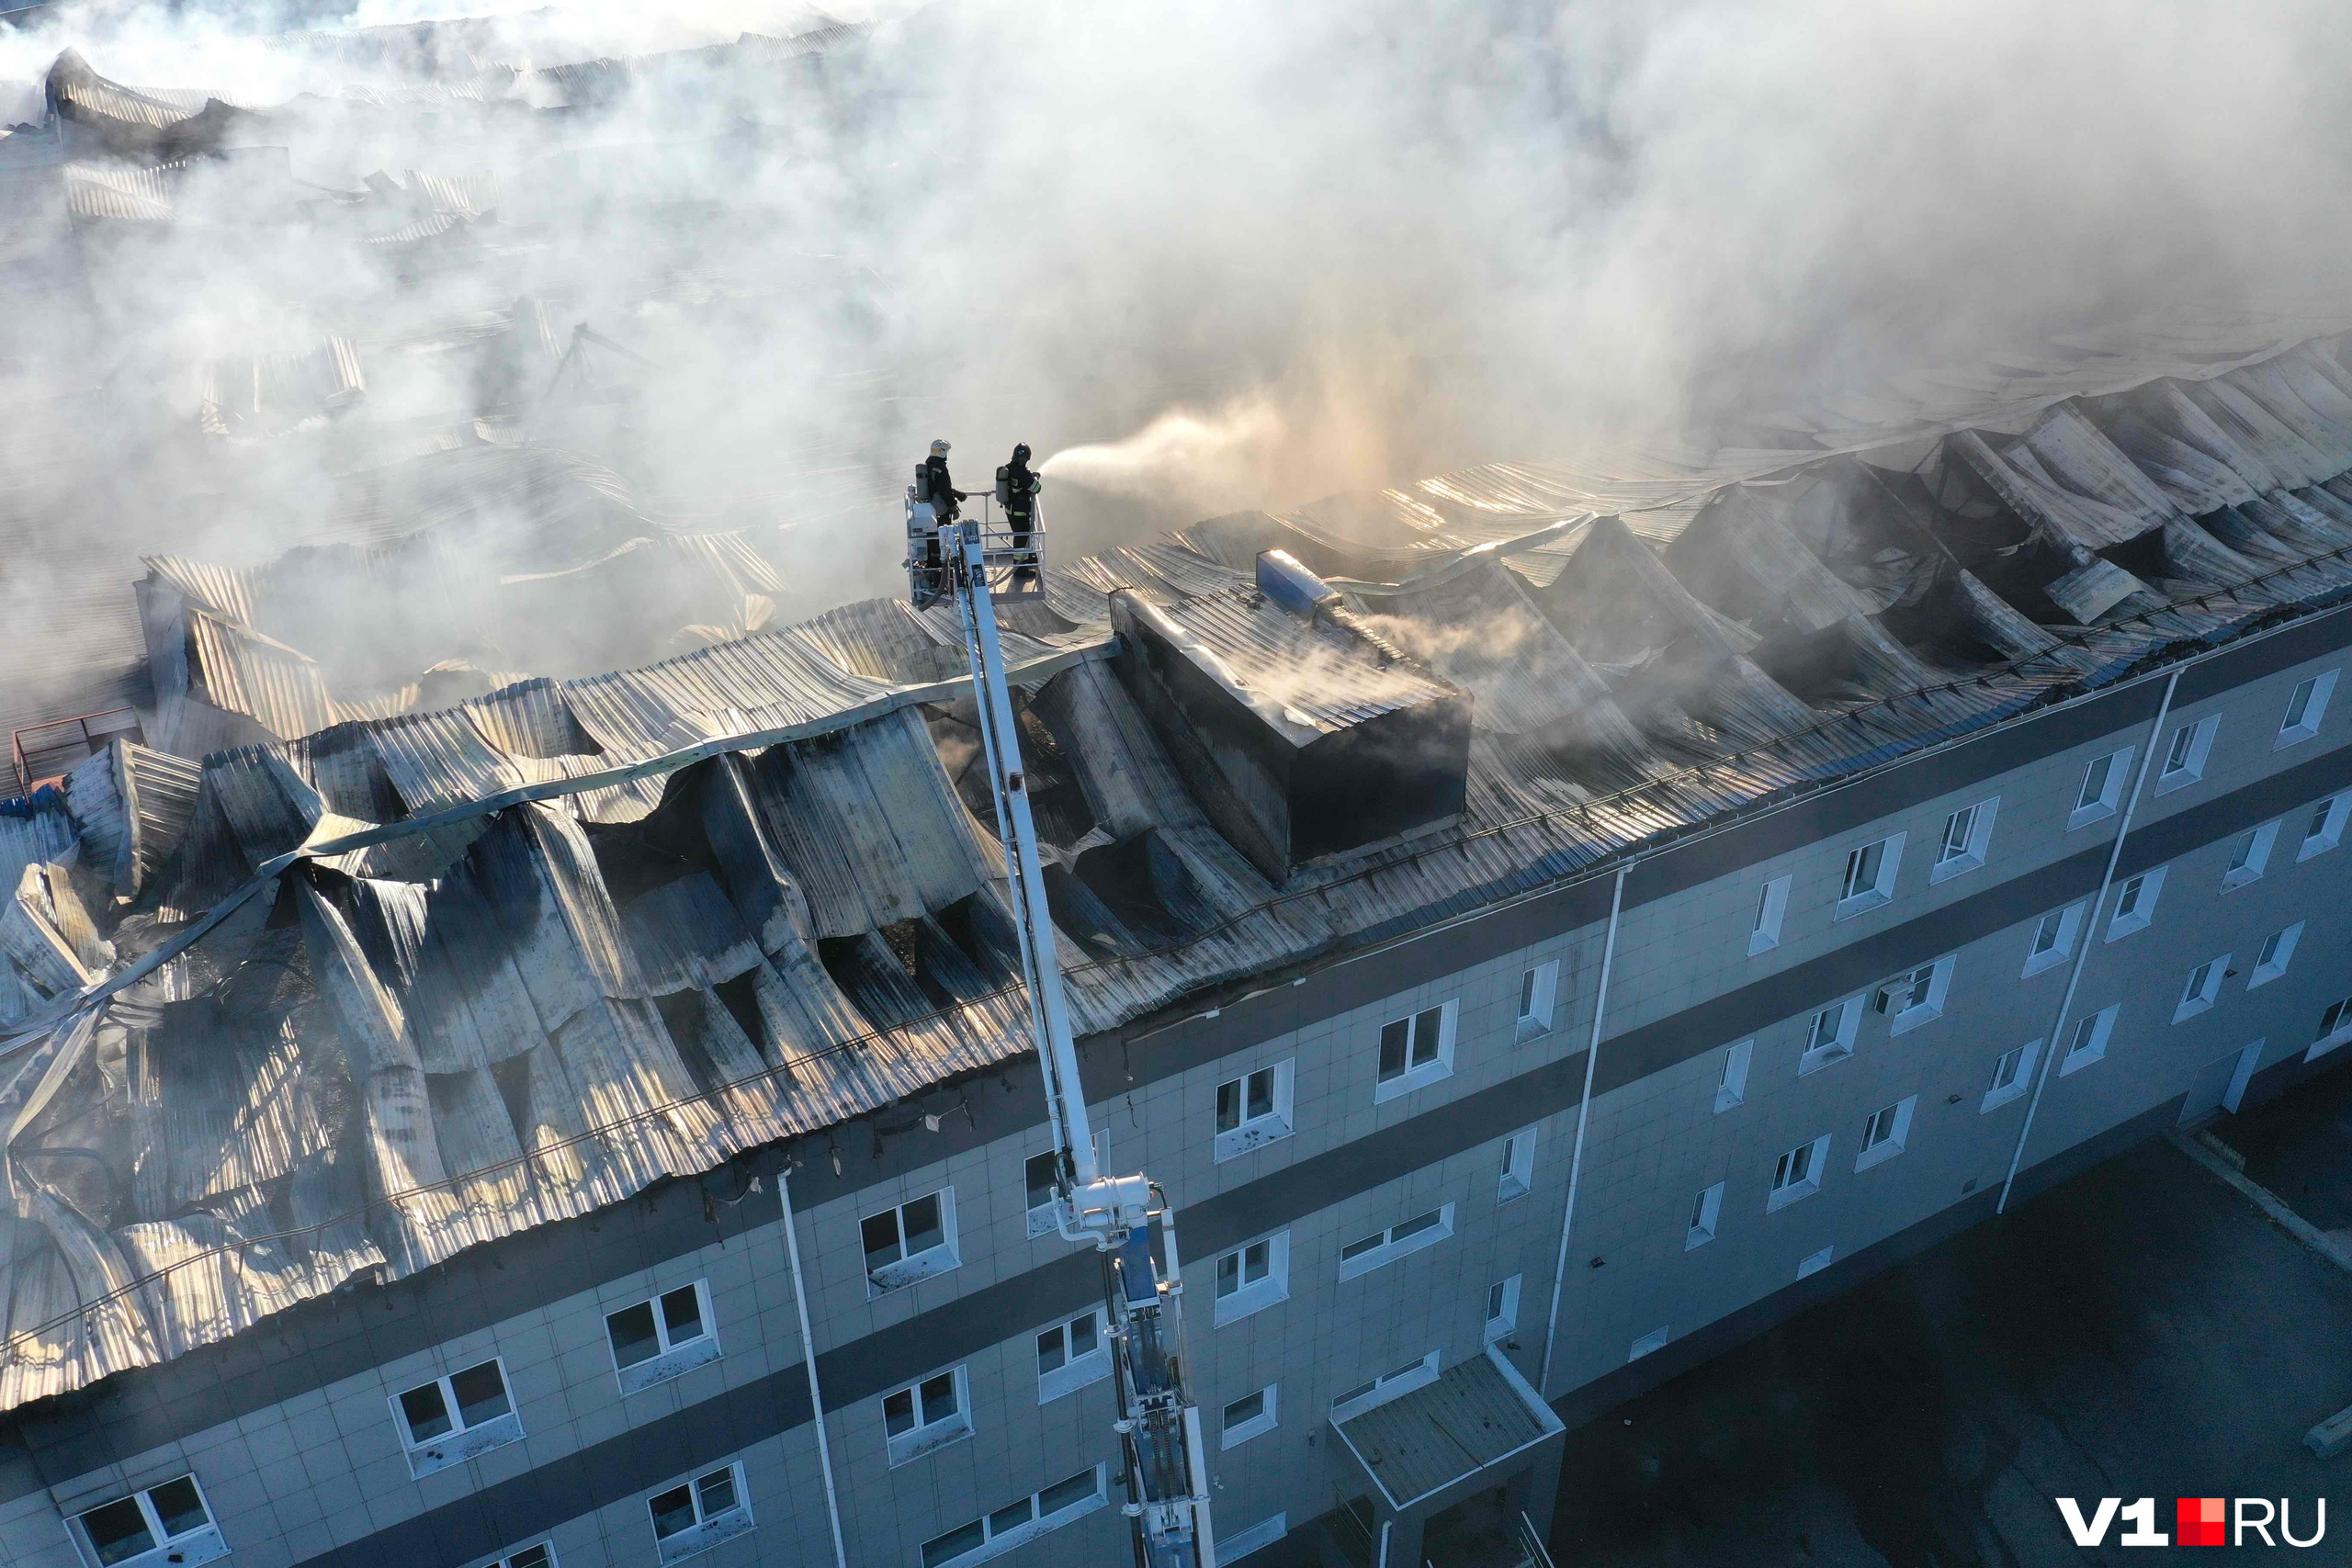 Пожарные тушили крышу здания несколько часов